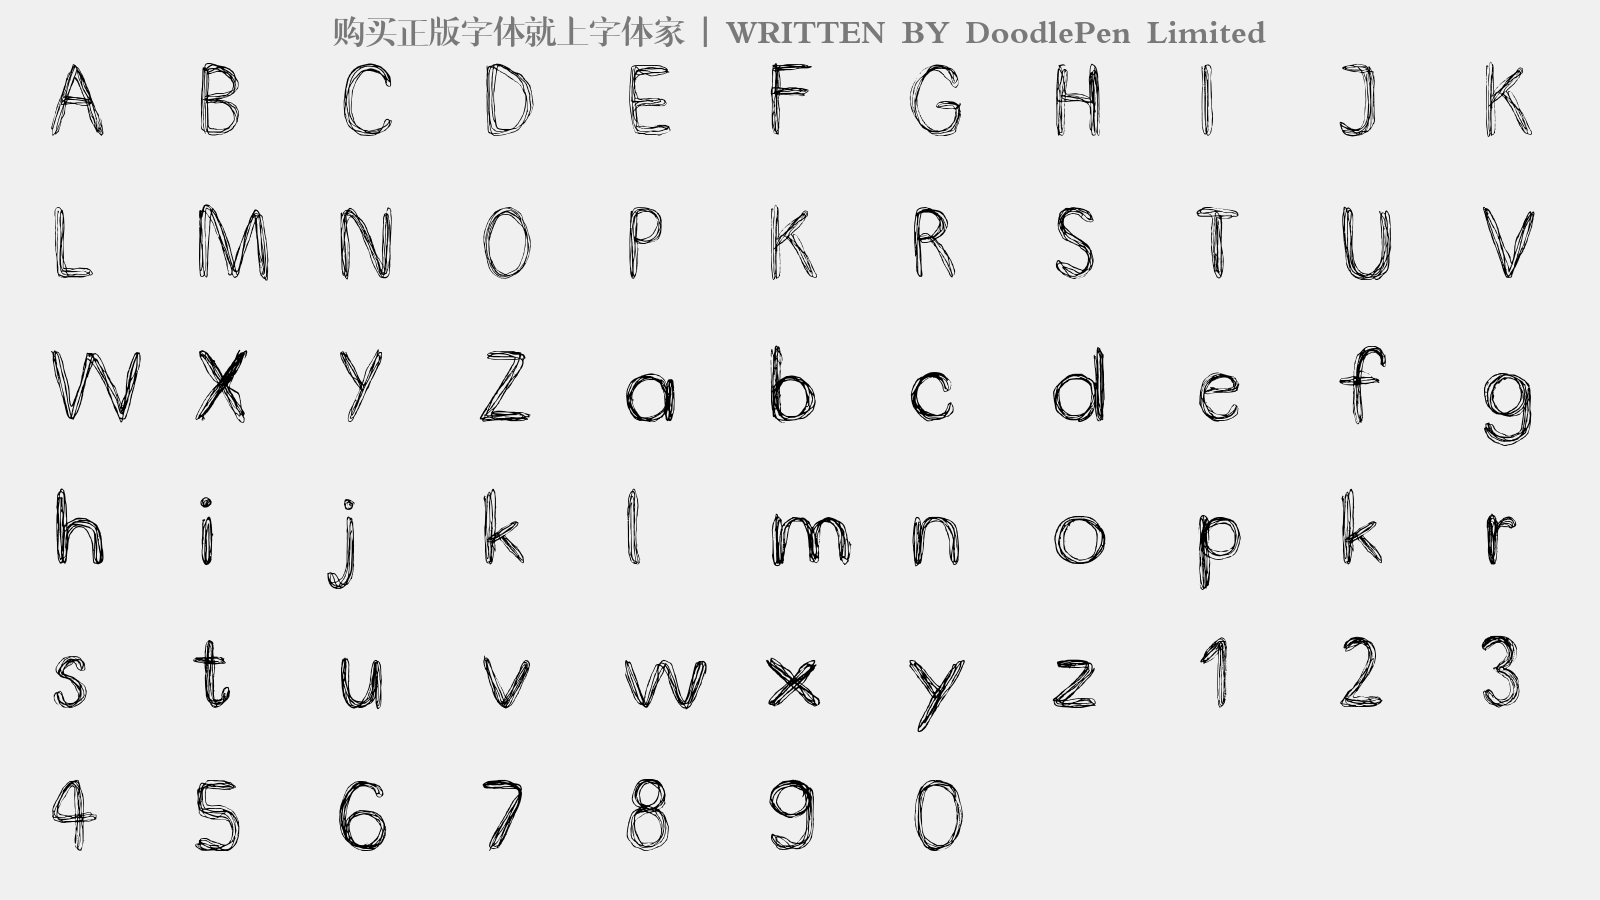 DoodlePen Limited - 大写字母/小写字母/数字